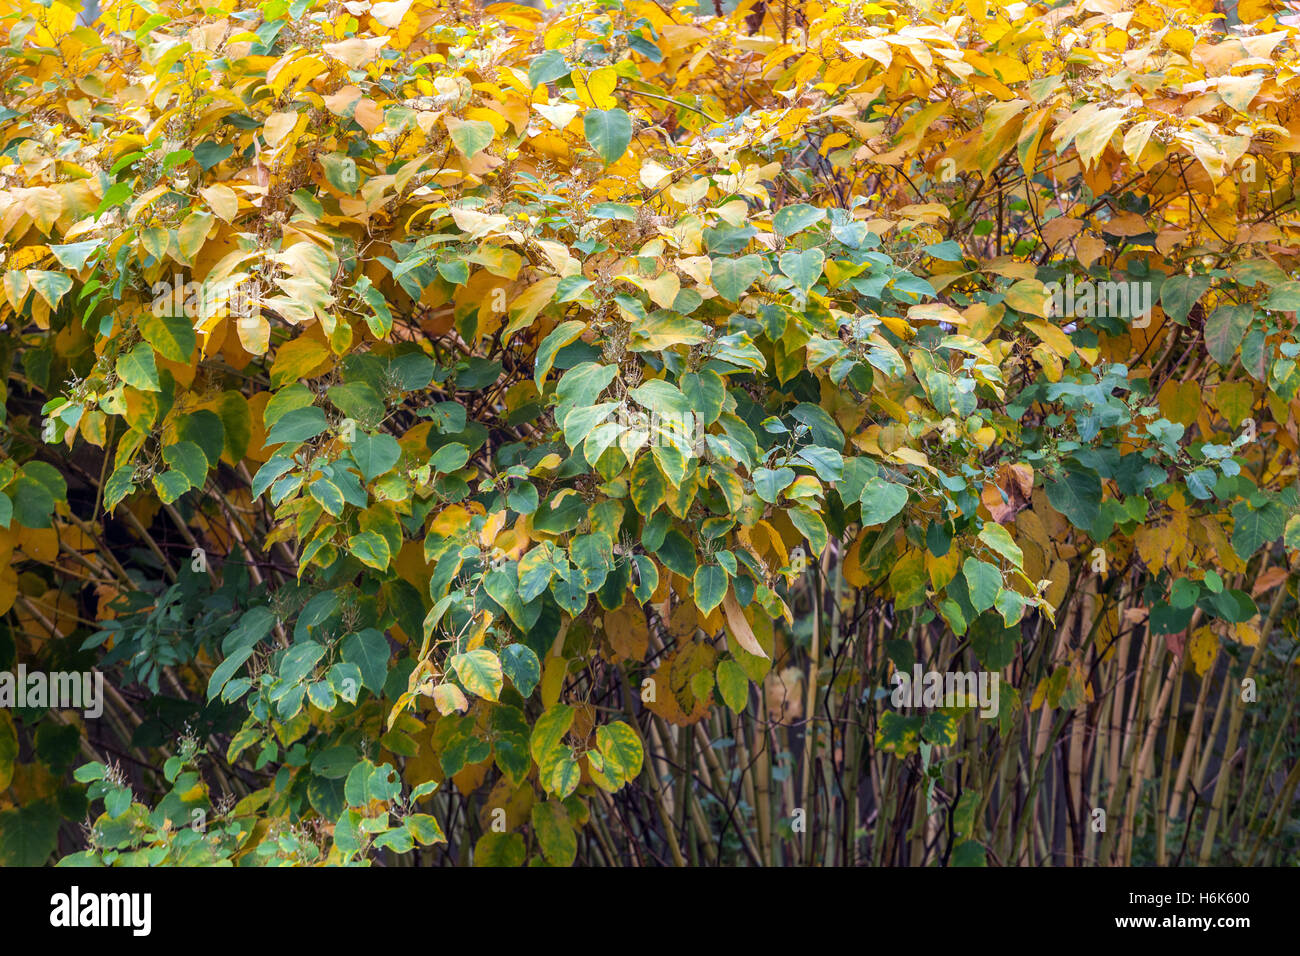 Giapponese Knotweed Fallopia japonica, Reynoutria japonica), colori autunnali, macchia di piante invasive Foto Stock